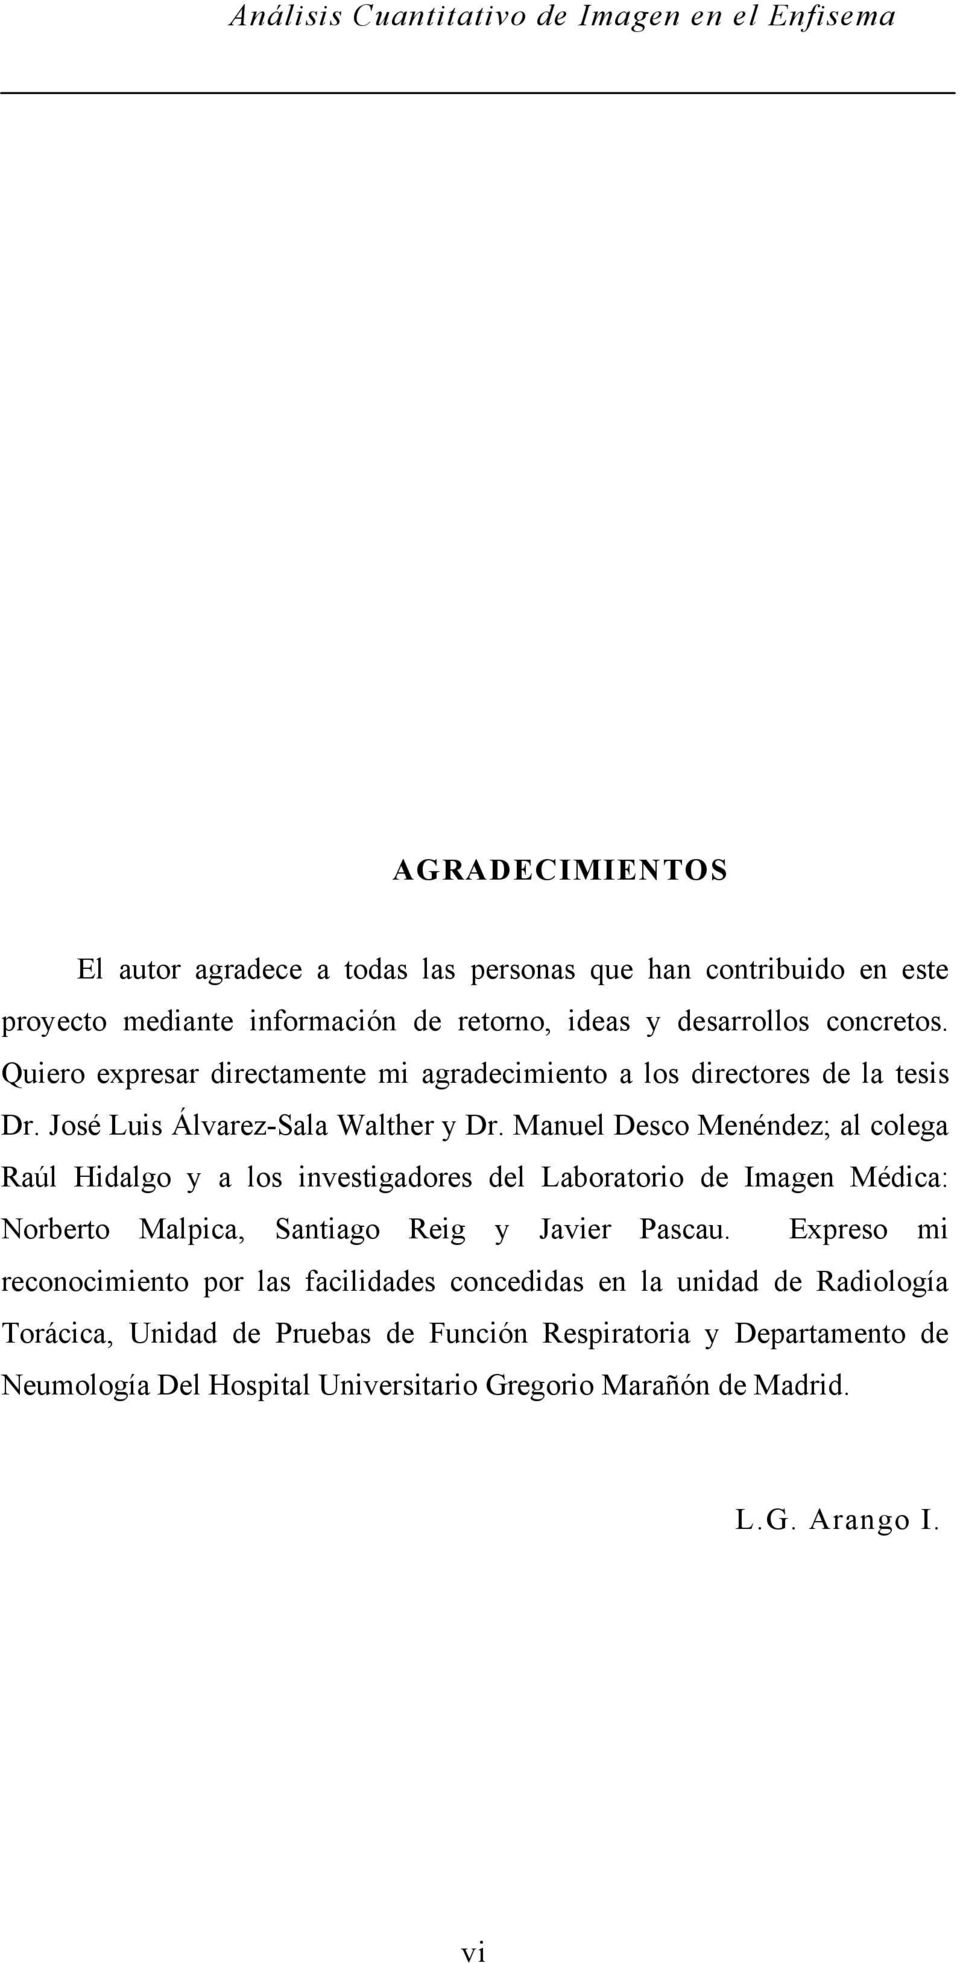 Manuel Desco Menéndez; al colega Raúl Hidalgo y a los investigadores del Laboratorio de Imagen Médica: Norberto Malpica, Santiago Reig y Javier Pascau.